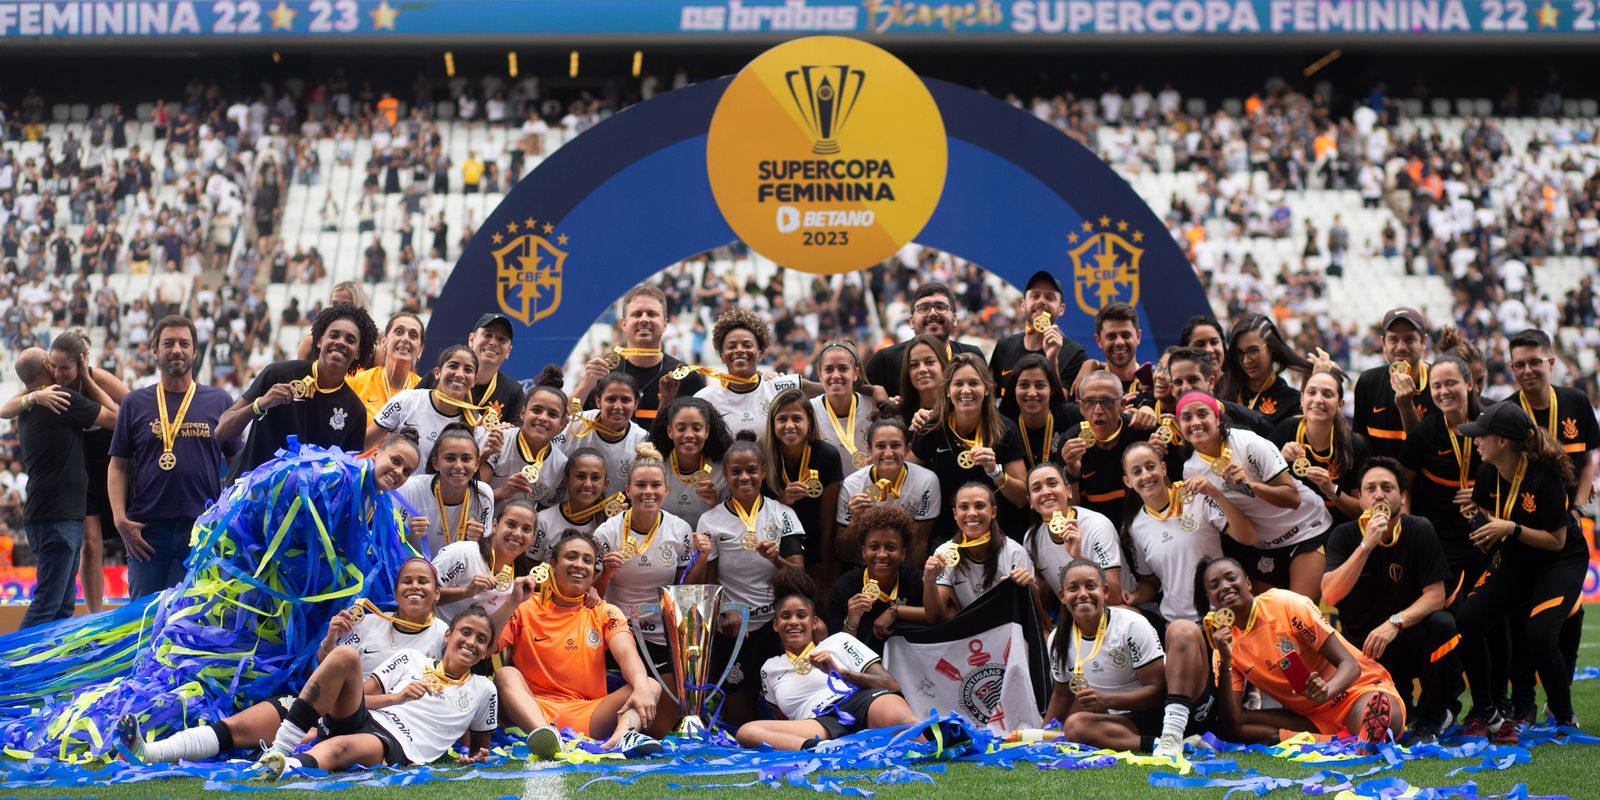 Supercopa do Brasil Feminina 2023 – Ingressos para Corinthians x  Internacional – 9/2